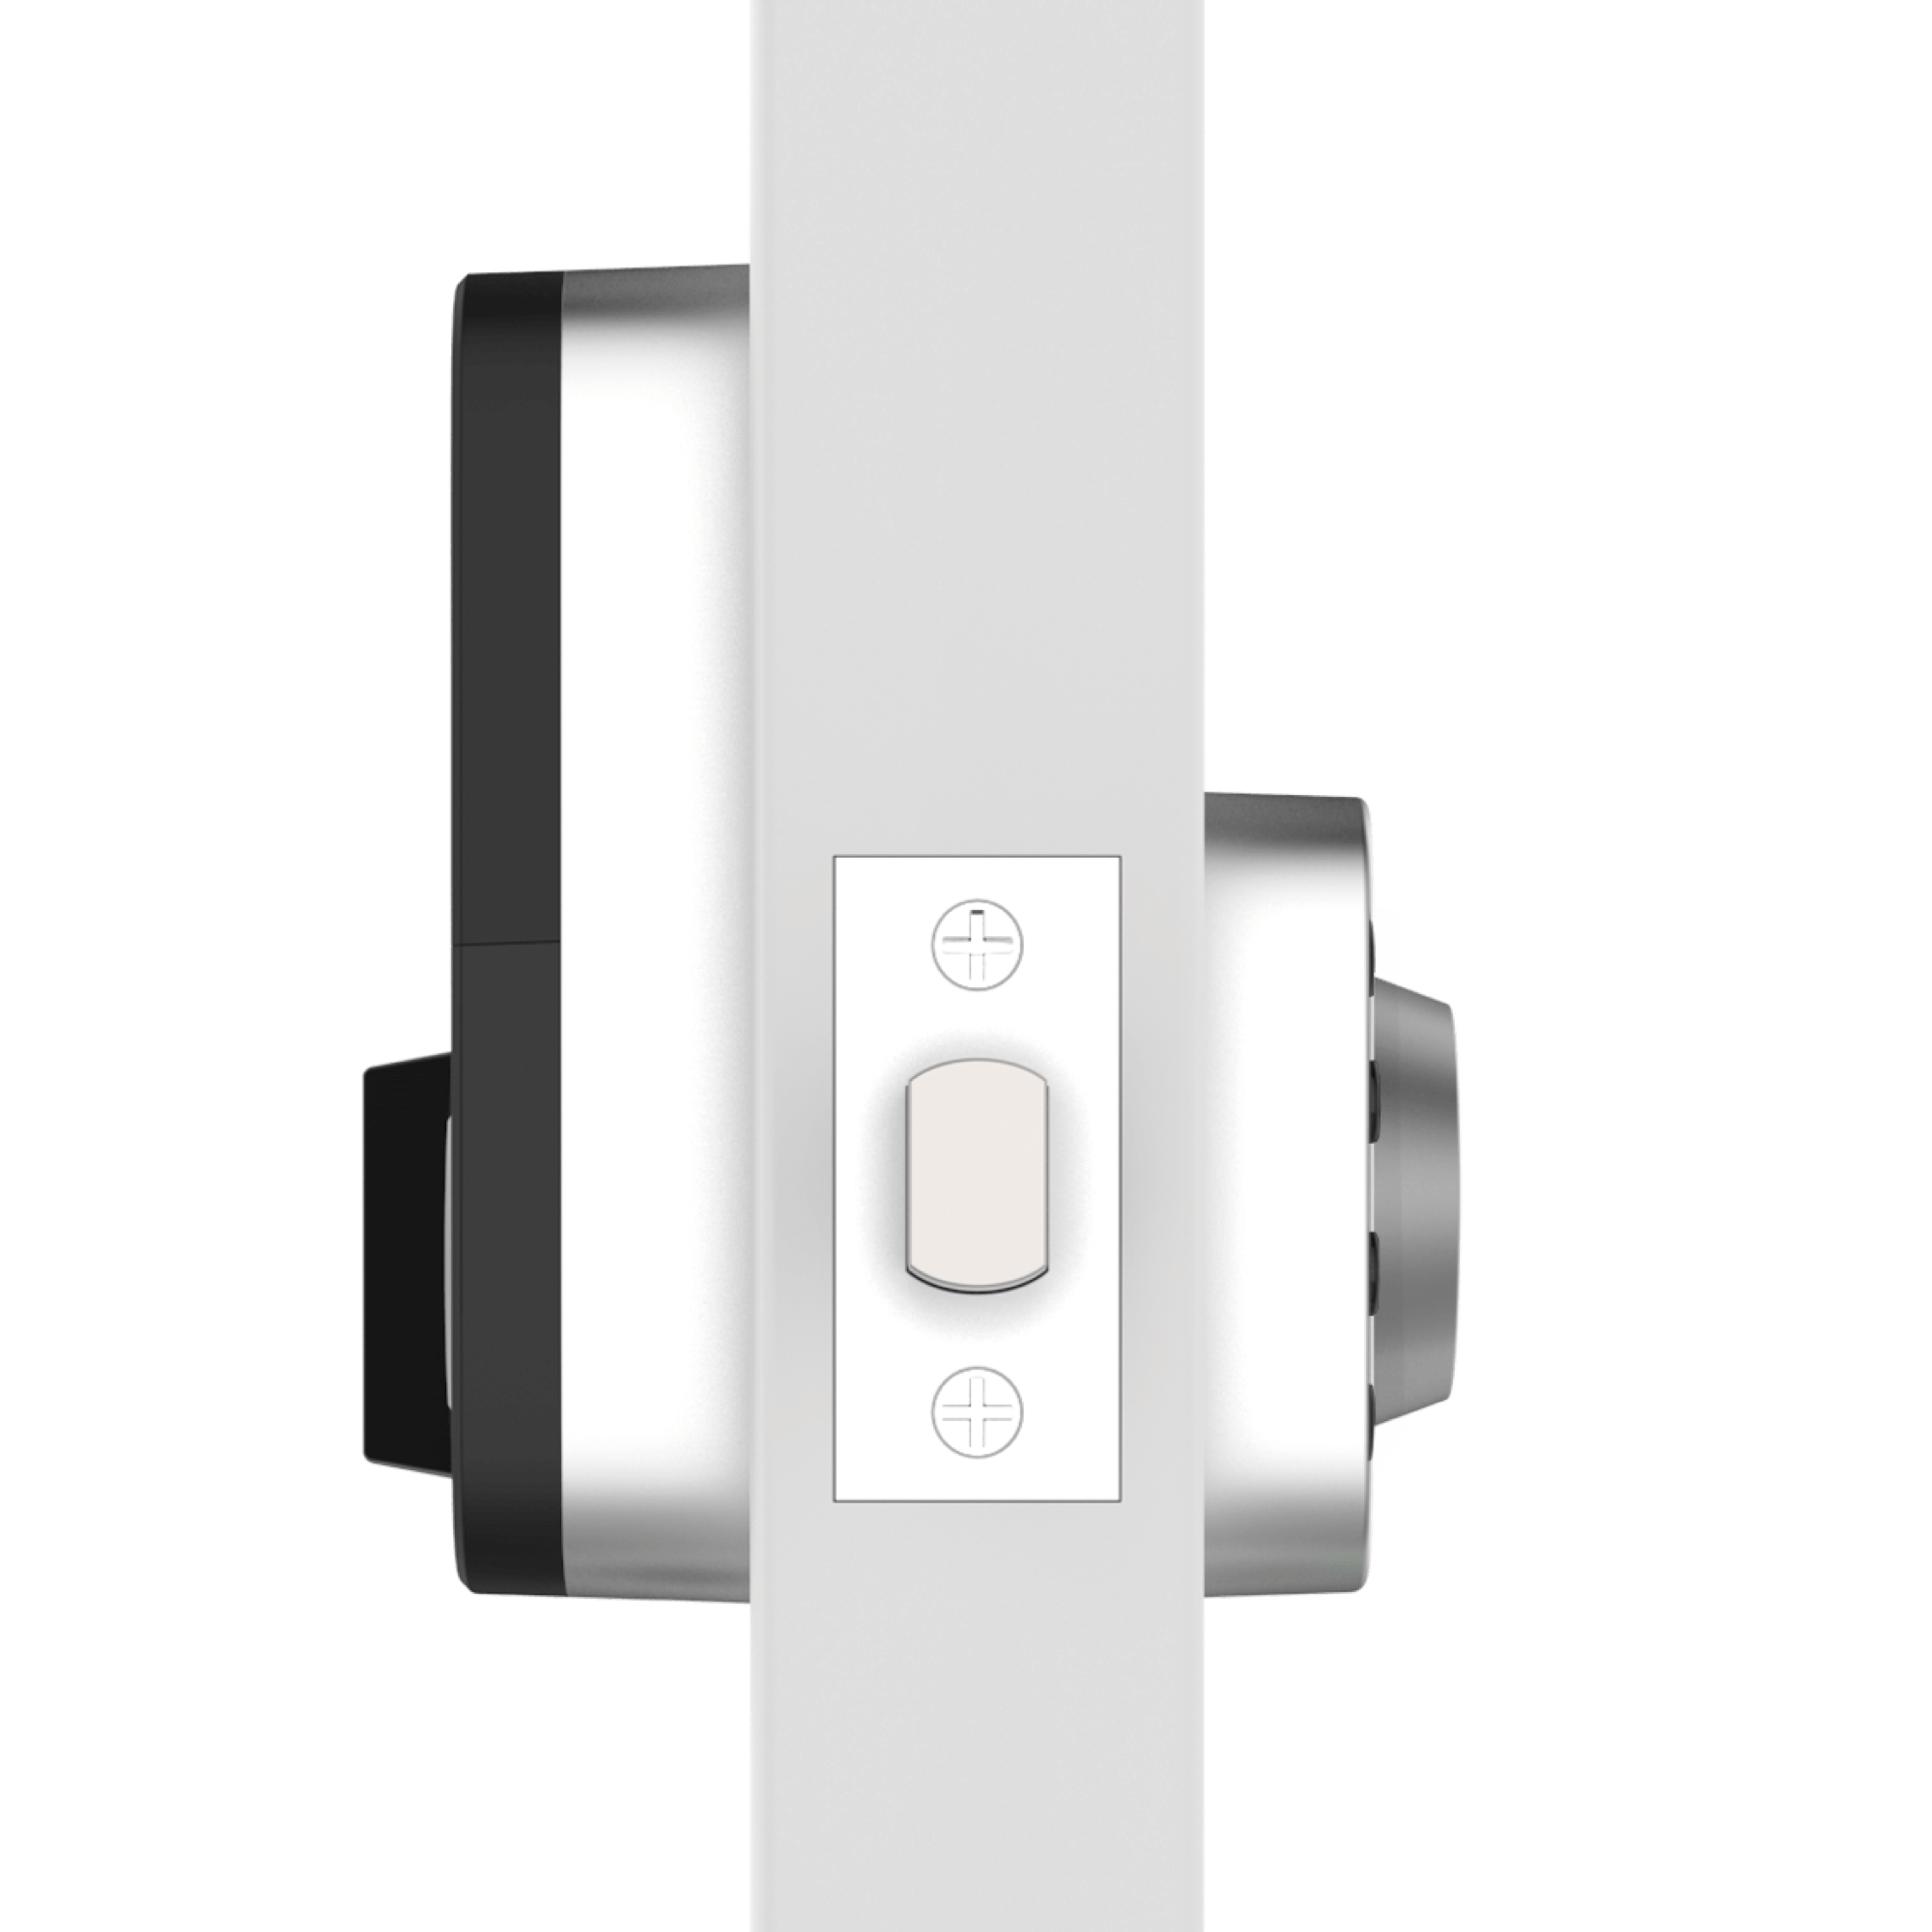 U-Tec, U-Tec U-BOLT-WIFI Bluetooth Enabled and Keypad Smart Deadbolt Door Lock in Satin Nickel New